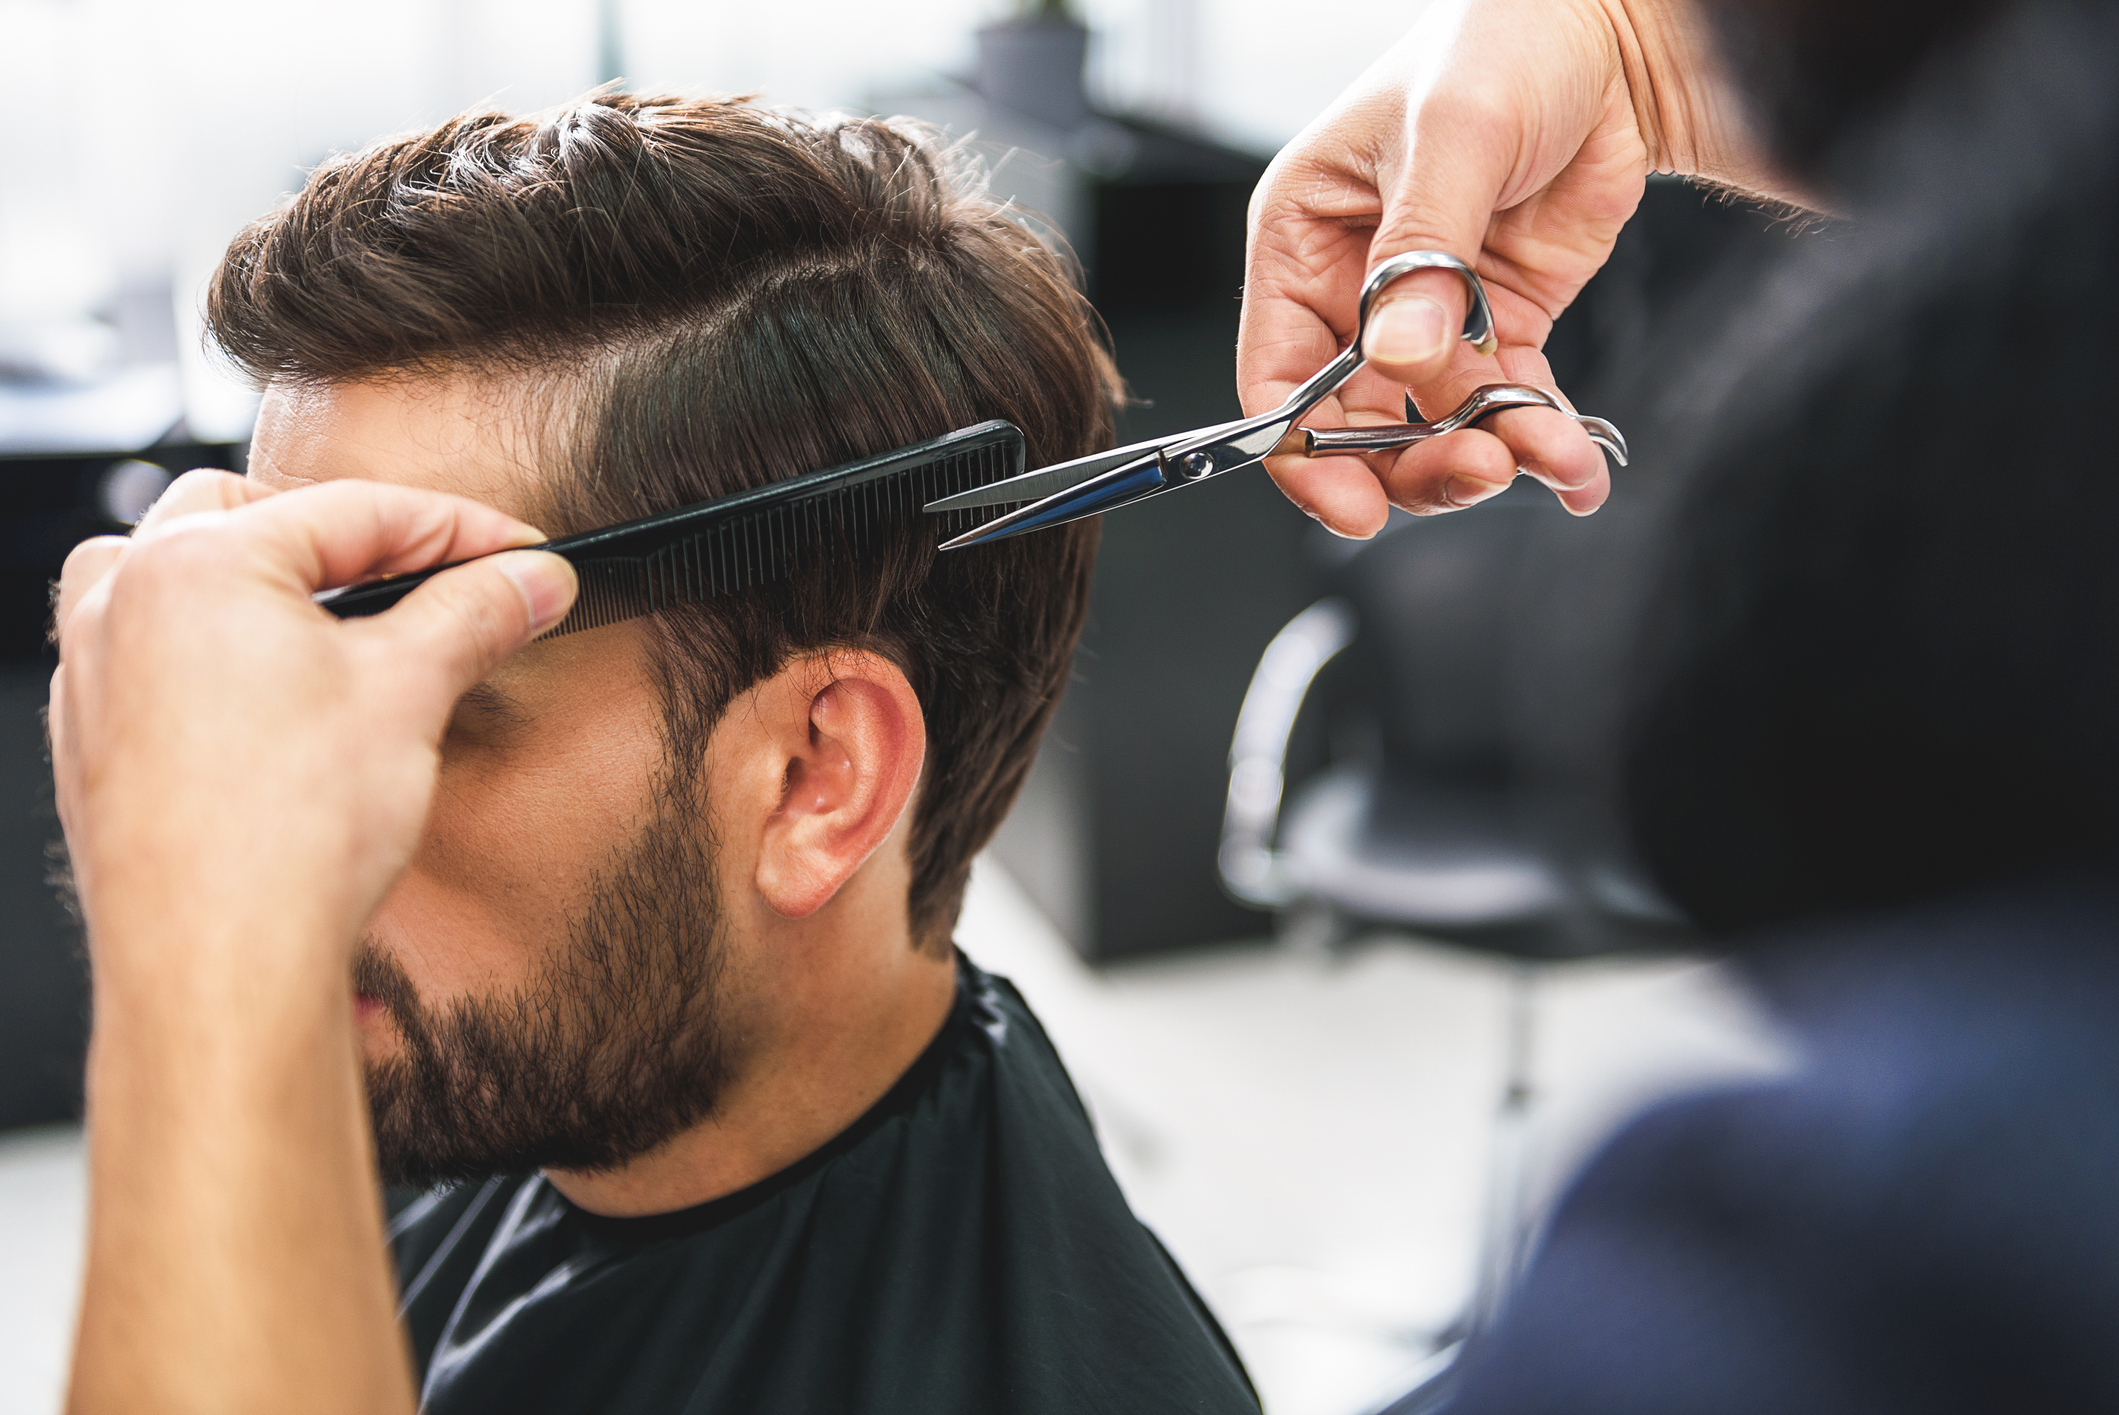 Why Endless Barbershop is the Best Barbershop in Garland